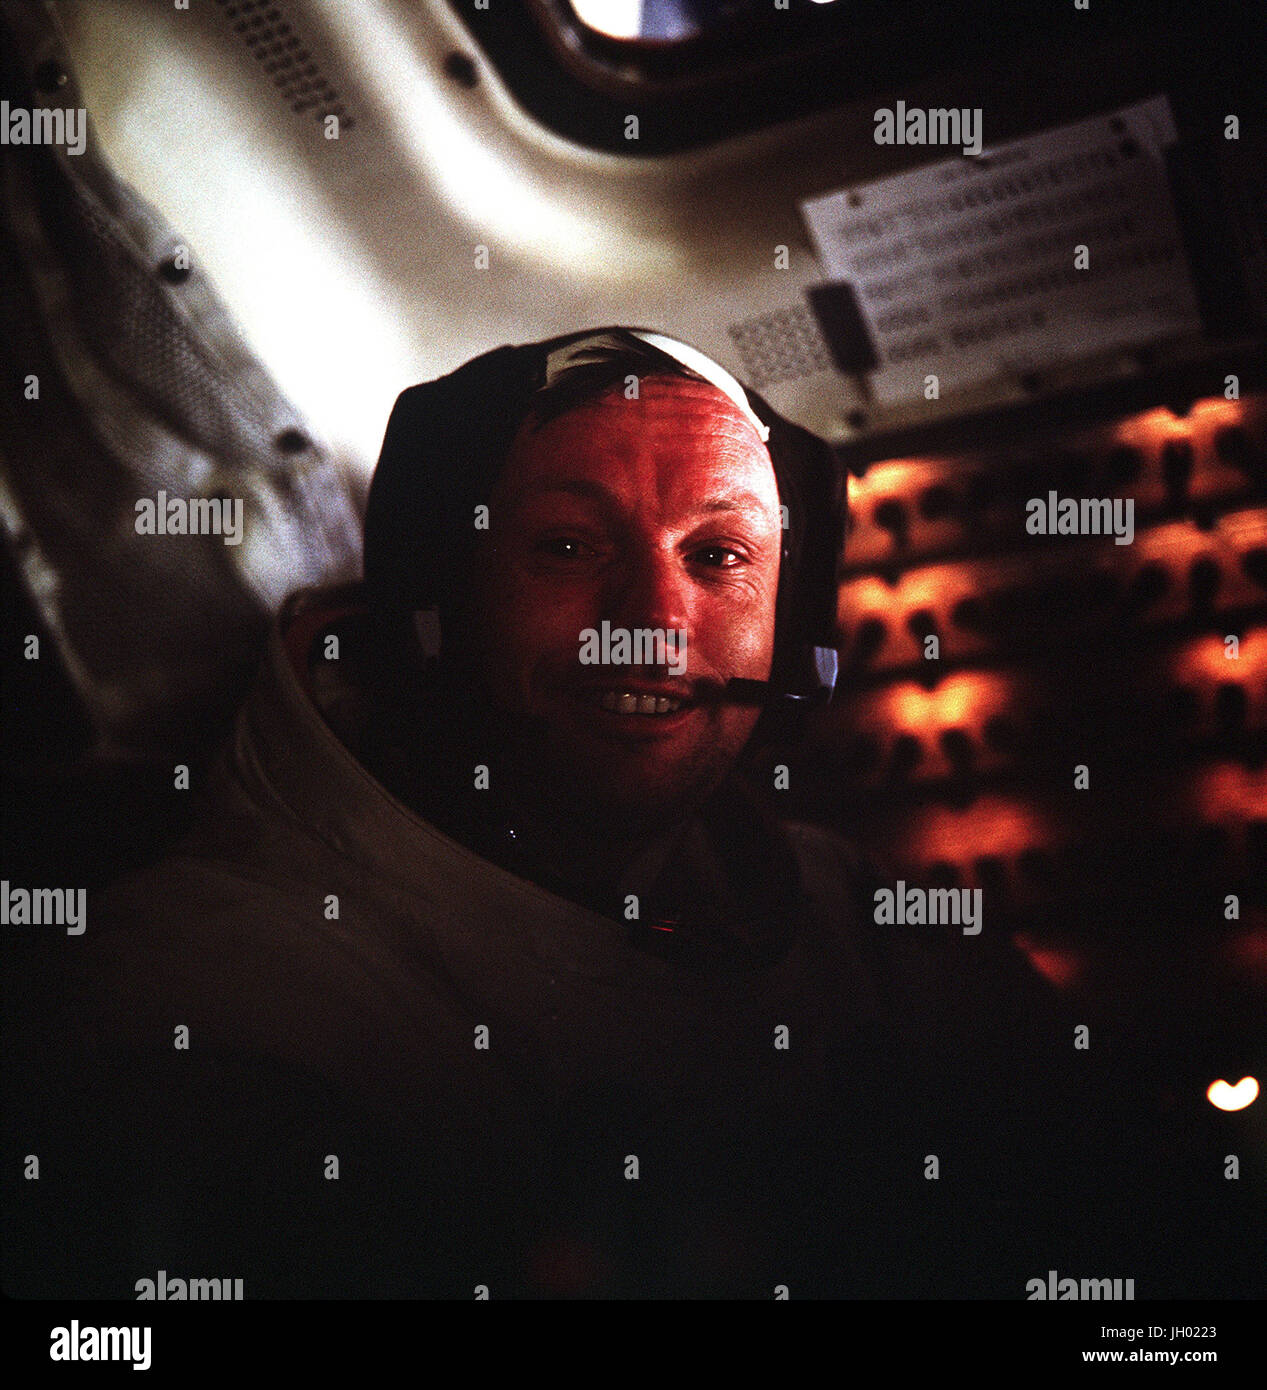 Dieses Foto von Neil A. Armstrong, Kommandant der Apollo 11 Astronaut wurde innerhalb der Mondlandefähre (LM) übernommen, während die LM auf der Mondoberfläche ruhte. Astronauten Armstrong und Edwin E. Aldrin, Jr., Pilot der Mondlandefähre, hatte sie bereits ihre historischen Extravehicular Activity (EVA) vollendet, als dieses Bild gemacht wurde. Astronaut Michael Collins, Befehl Modul-Pilot, blieb bei der Command and Service Module (CSM) im lunar Orbit während Armstrong und Aldrin erkundet die Oberfläche des Mondes. NASA-Foto Stockfoto